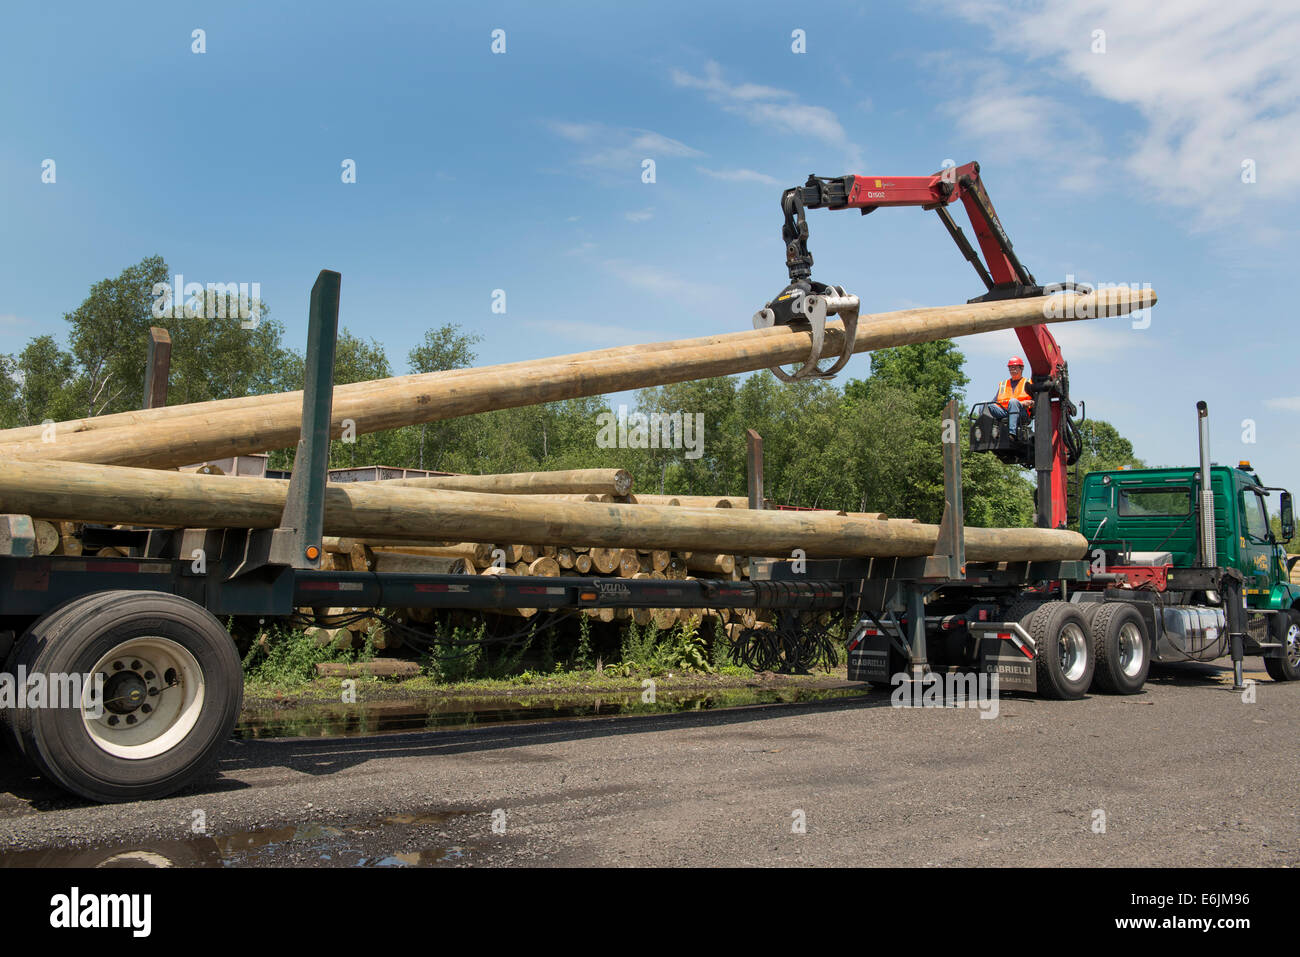 Plana, o abrir camión equipado con brazo articulado para mover los postes telefónicos. Anastasio Grupo de camiones. Foto de stock